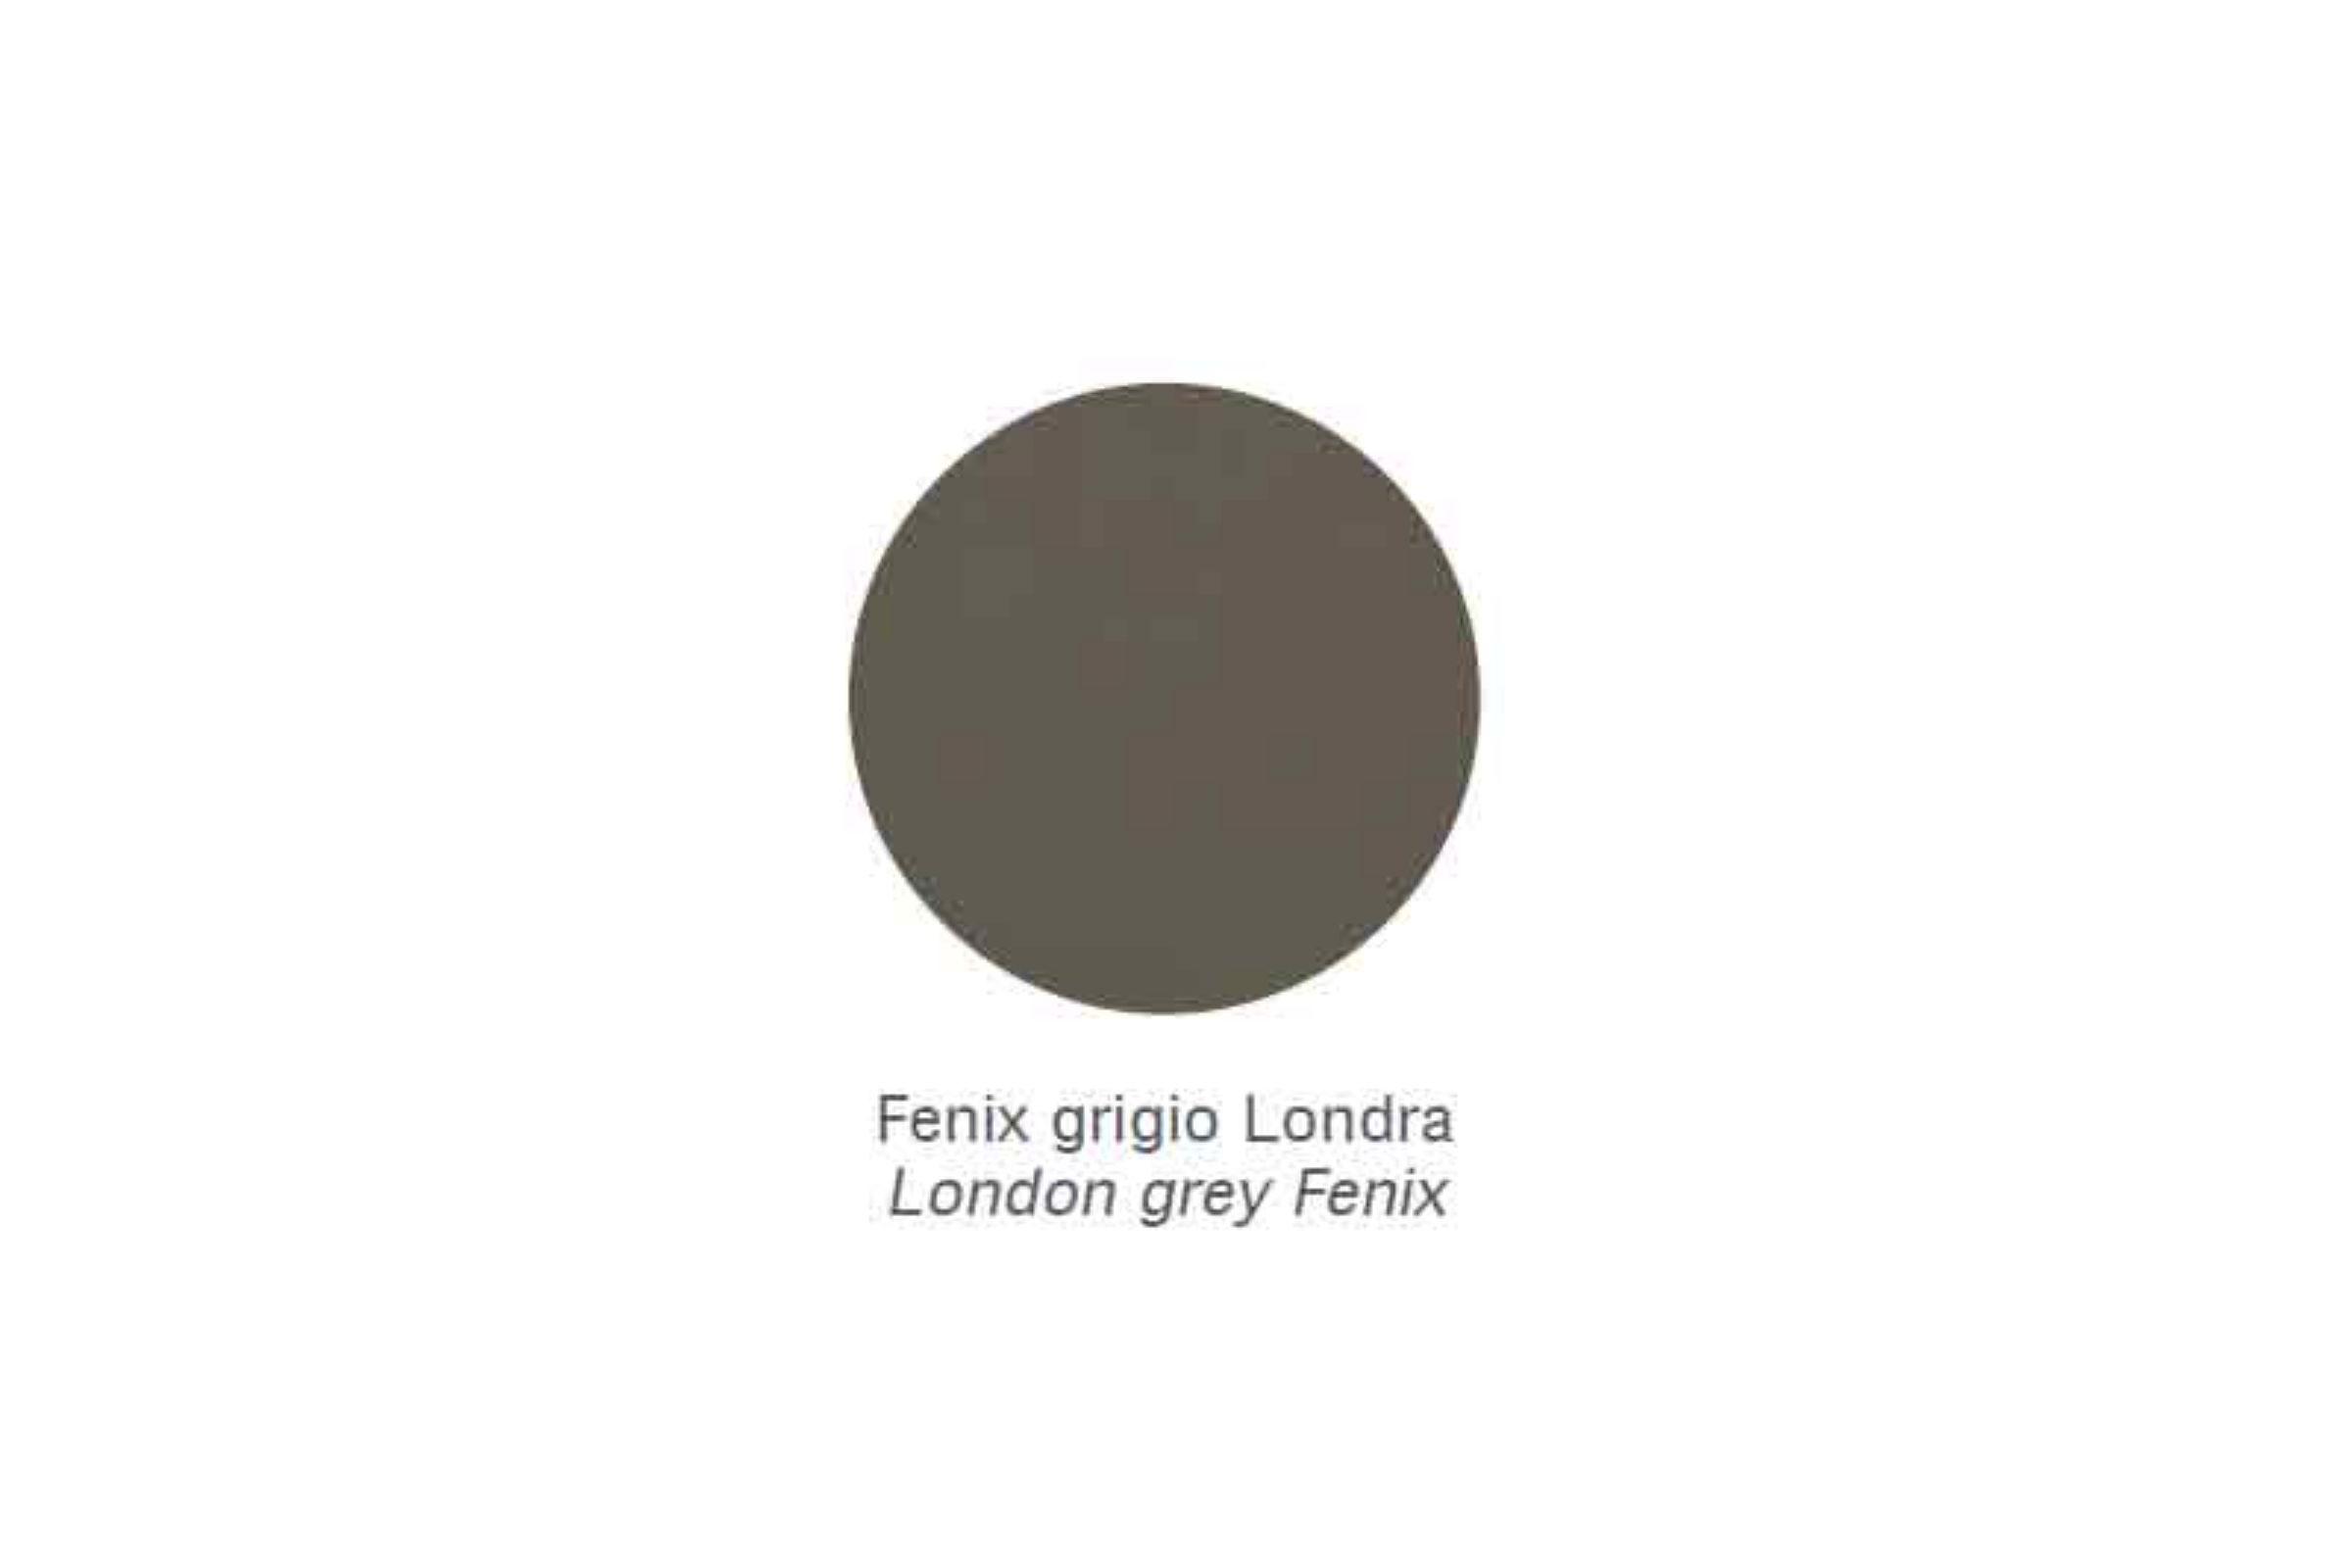 Mensola porta phon (solo per corrimano) Zen - Mensola porta phon (solo per corrimano) Zen Fenix grigio Londra